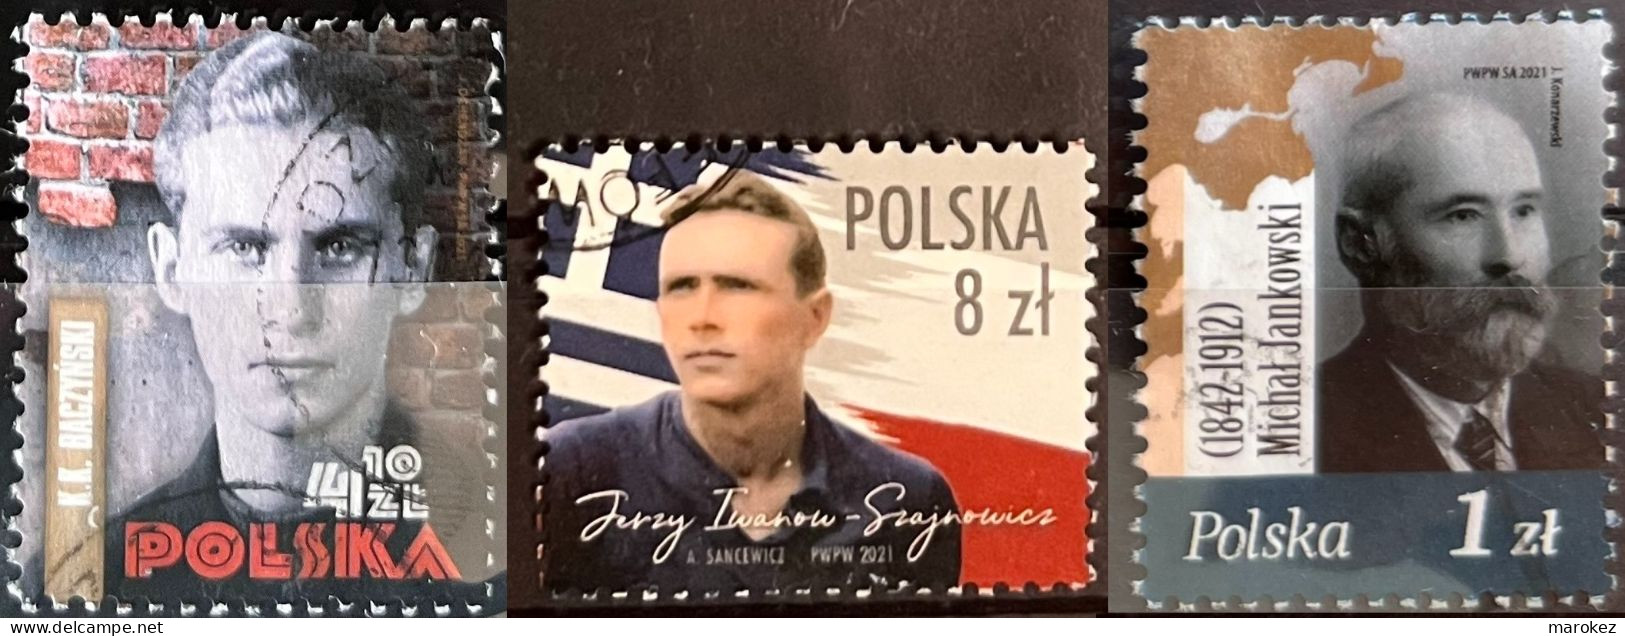 POLAND 2021 Krzysztof Baczynski, Jerzy Iwanow-Szajnowicz & Michał Jankowski Postally Used MICHEL # 5273,5283,5284 - Used Stamps